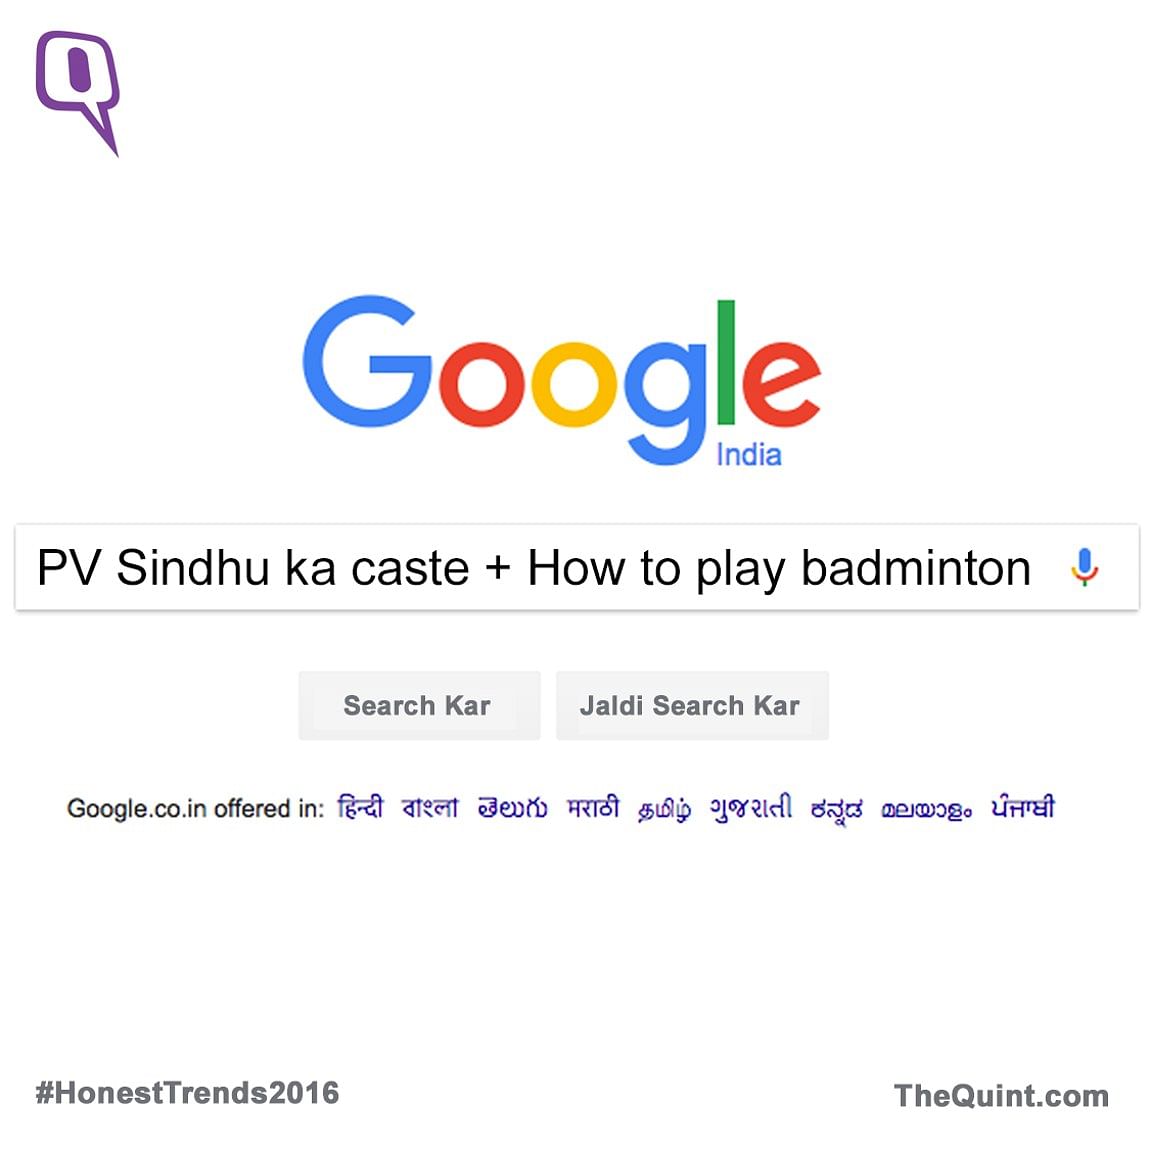 

इंडिया का गूगल ट्रेंड डाटा सबके सामने आ चुका है, लेकिन क्या ये देश की सही तस्वीर दर्शाता है?